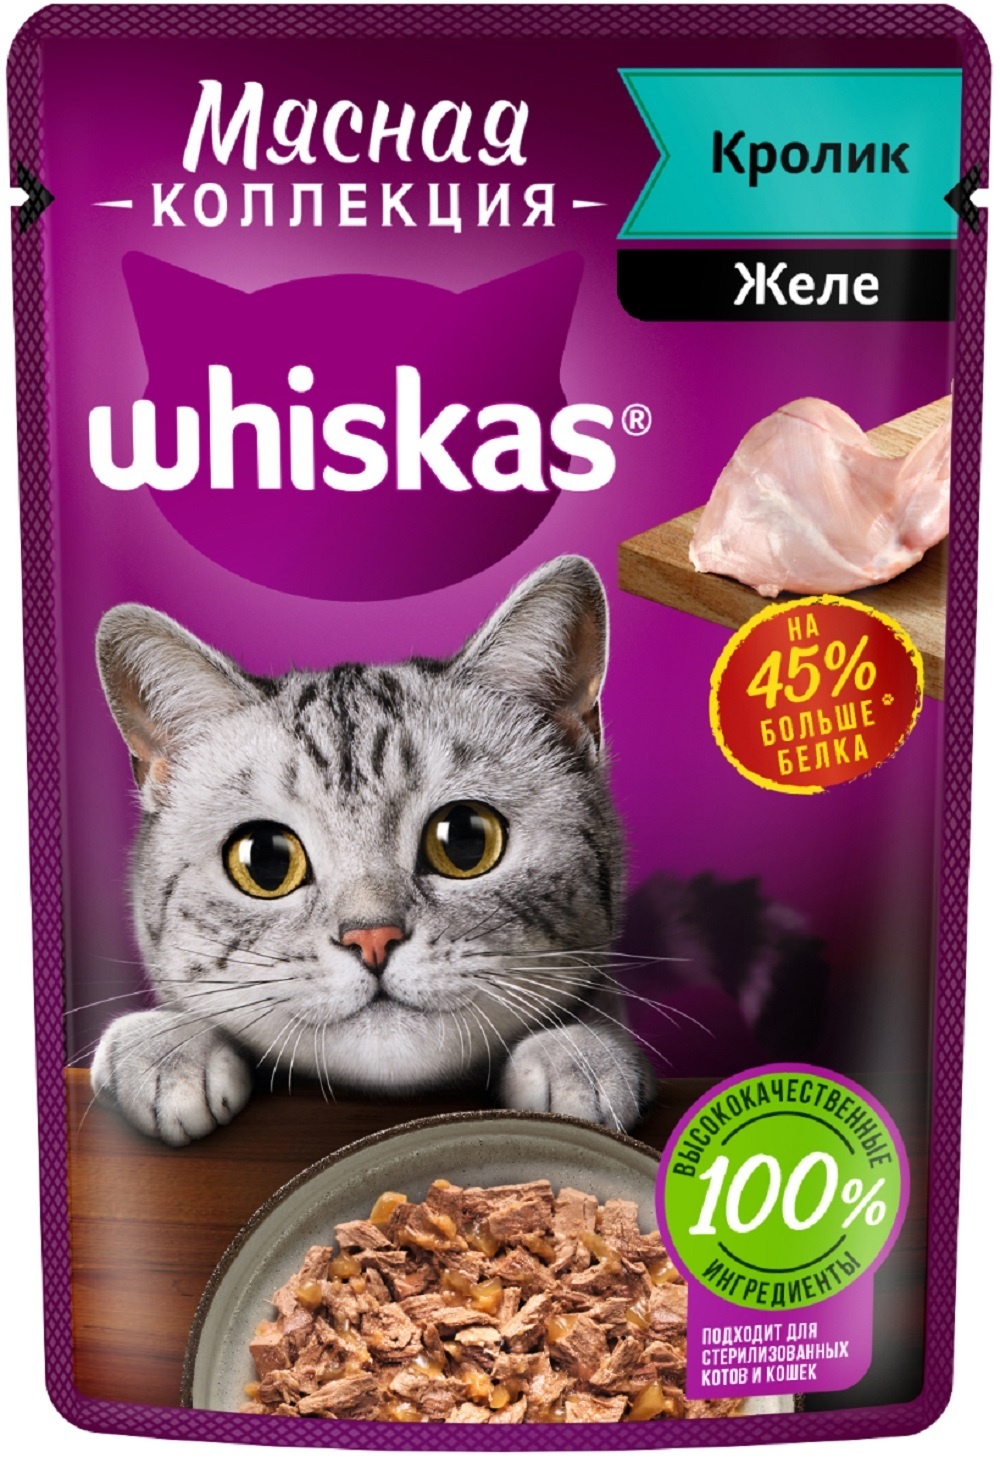 Whiskas Whiskas влажный корм «Мясная коллекция» для кошек, с кроликом (75 г)